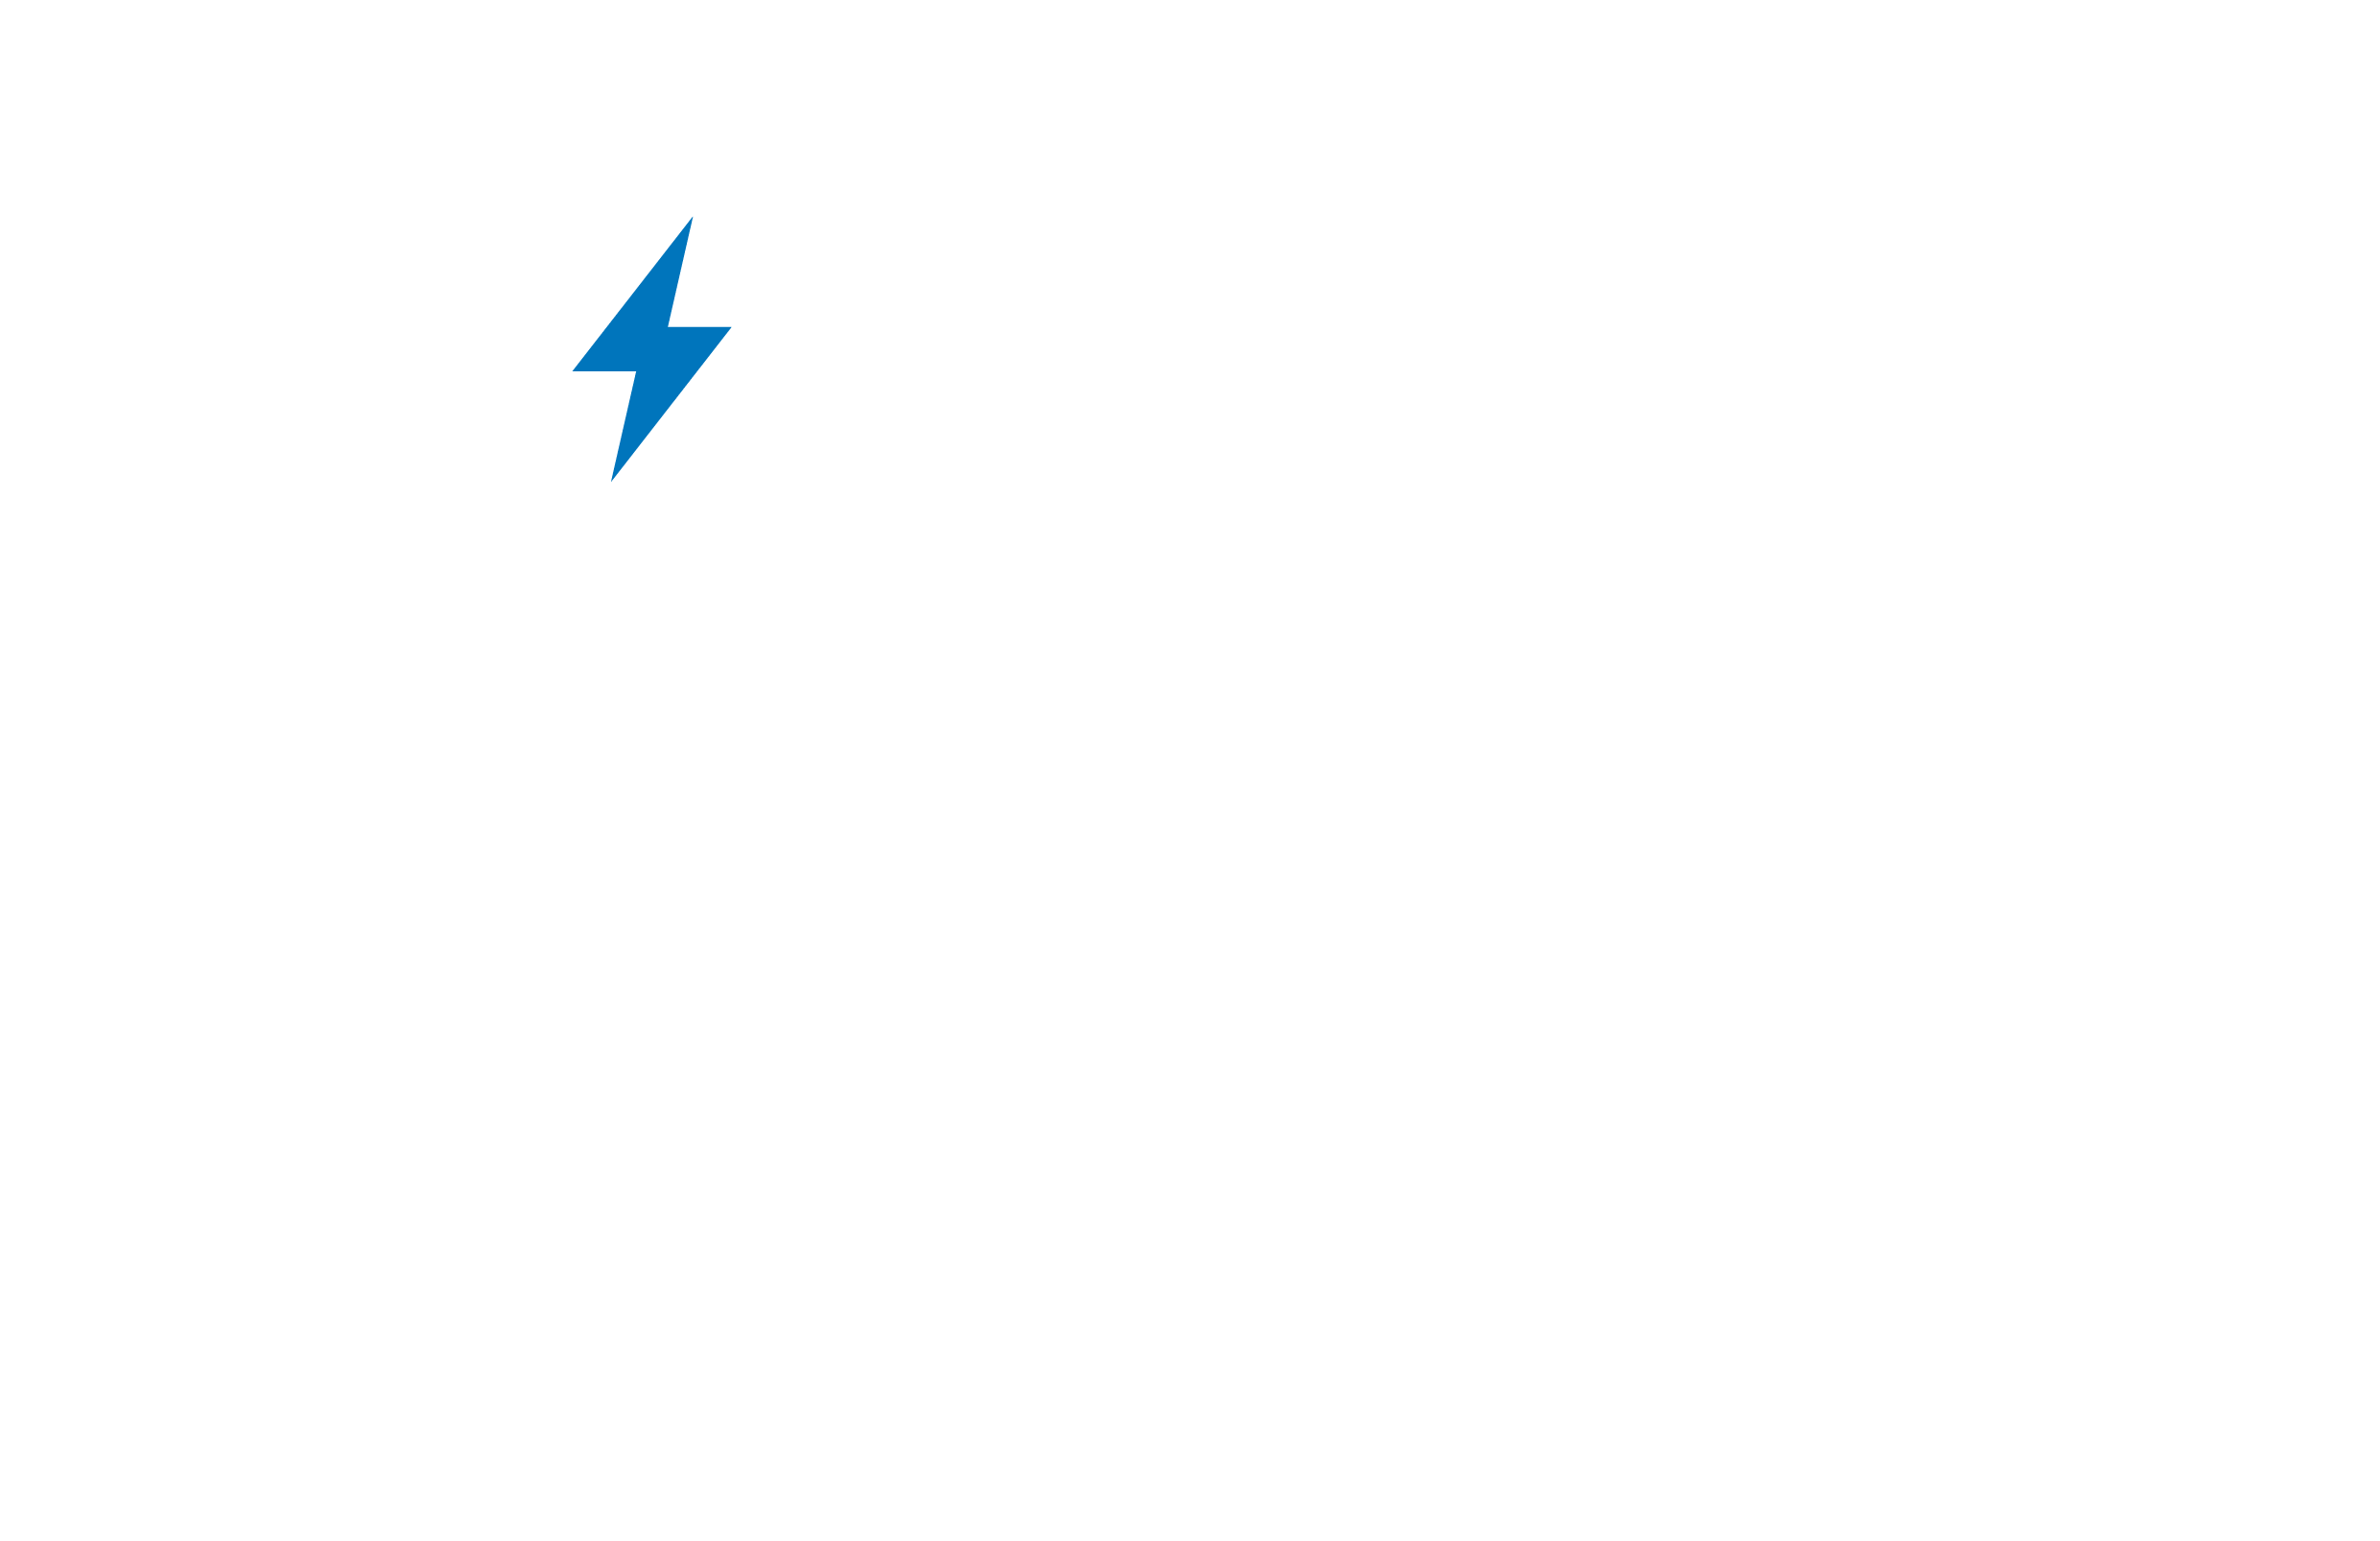 50 MVA installierte Leistung pro Jahr 30 VZÄ +80 JAHRE 50K produzierte Transformatoren pro Jahr